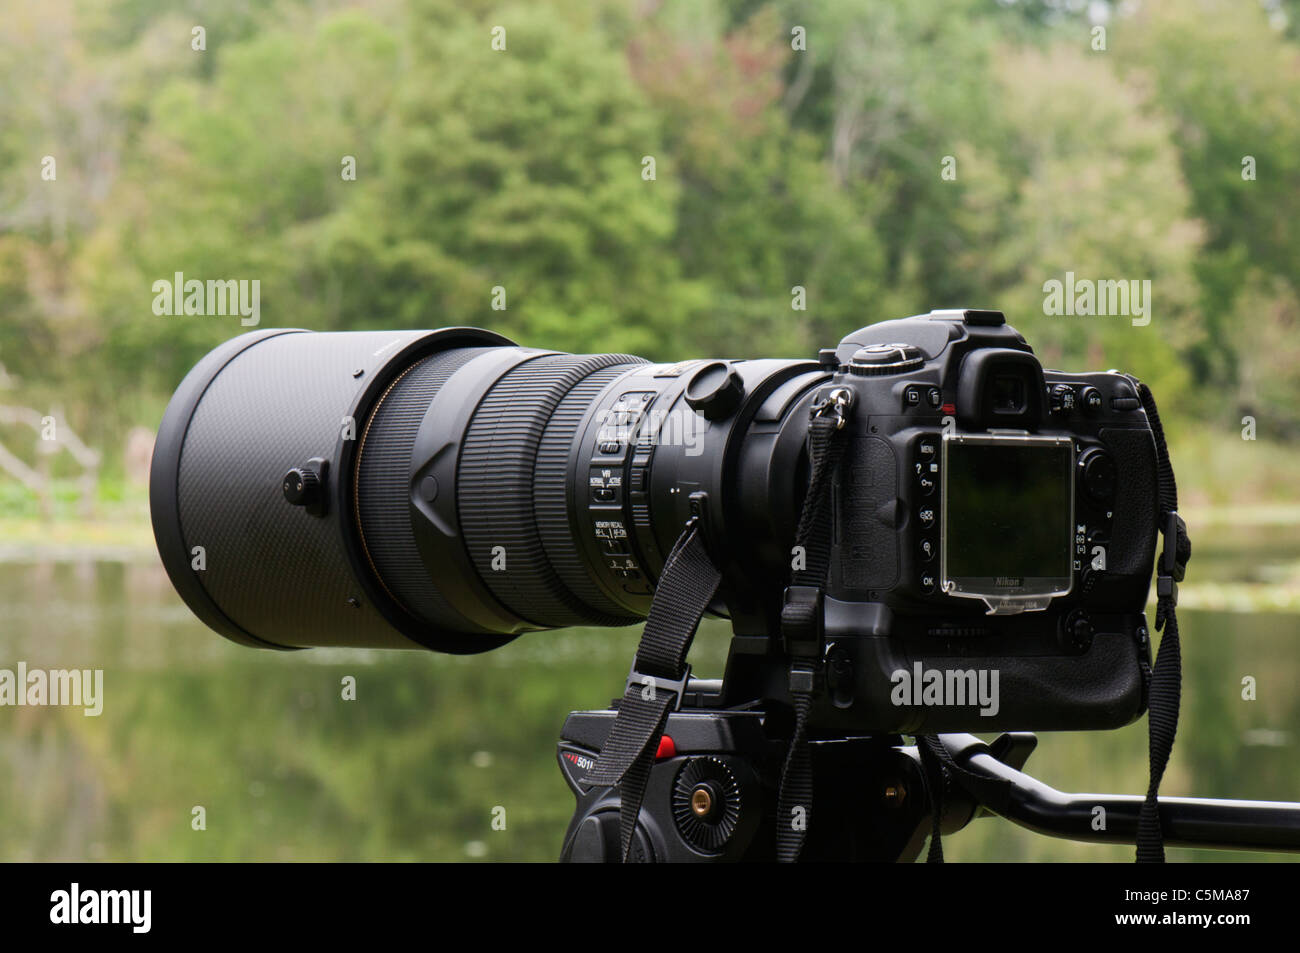 Nikon Nikkor 300mm 2.8 VRII lente telefoto montado en una Nikon D300 con el  MB-D10 batería y un Trípode Manfrotto 501HDV Fotografía de stock - Alamy